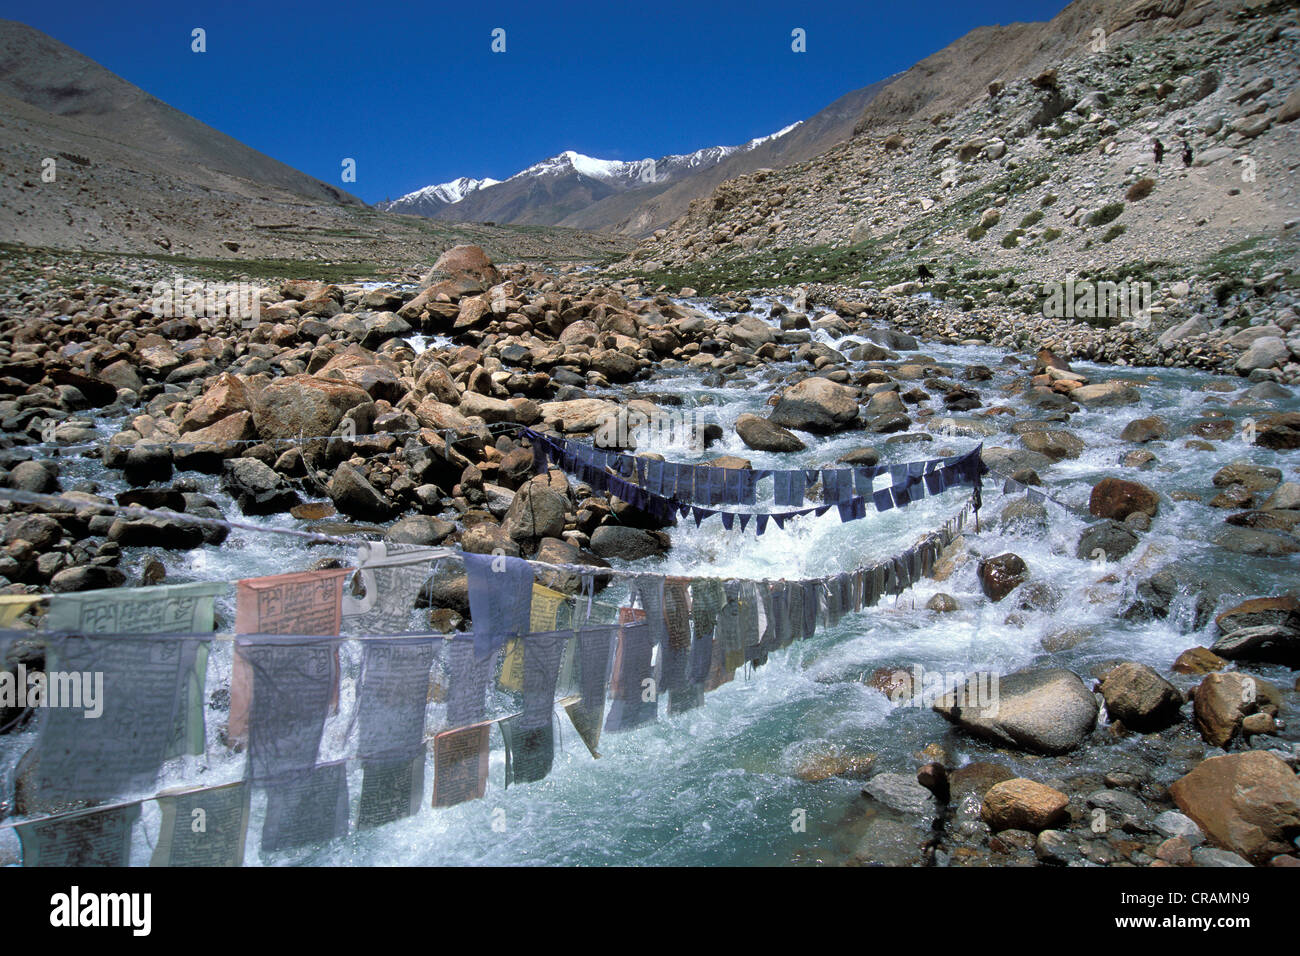 Drapeaux de prière près de Honupatta, Zanskar, Ladakh, Himalaya indien, le Jammu-et-Cachemire, l'Inde du nord, Inde, Asie Banque D'Images